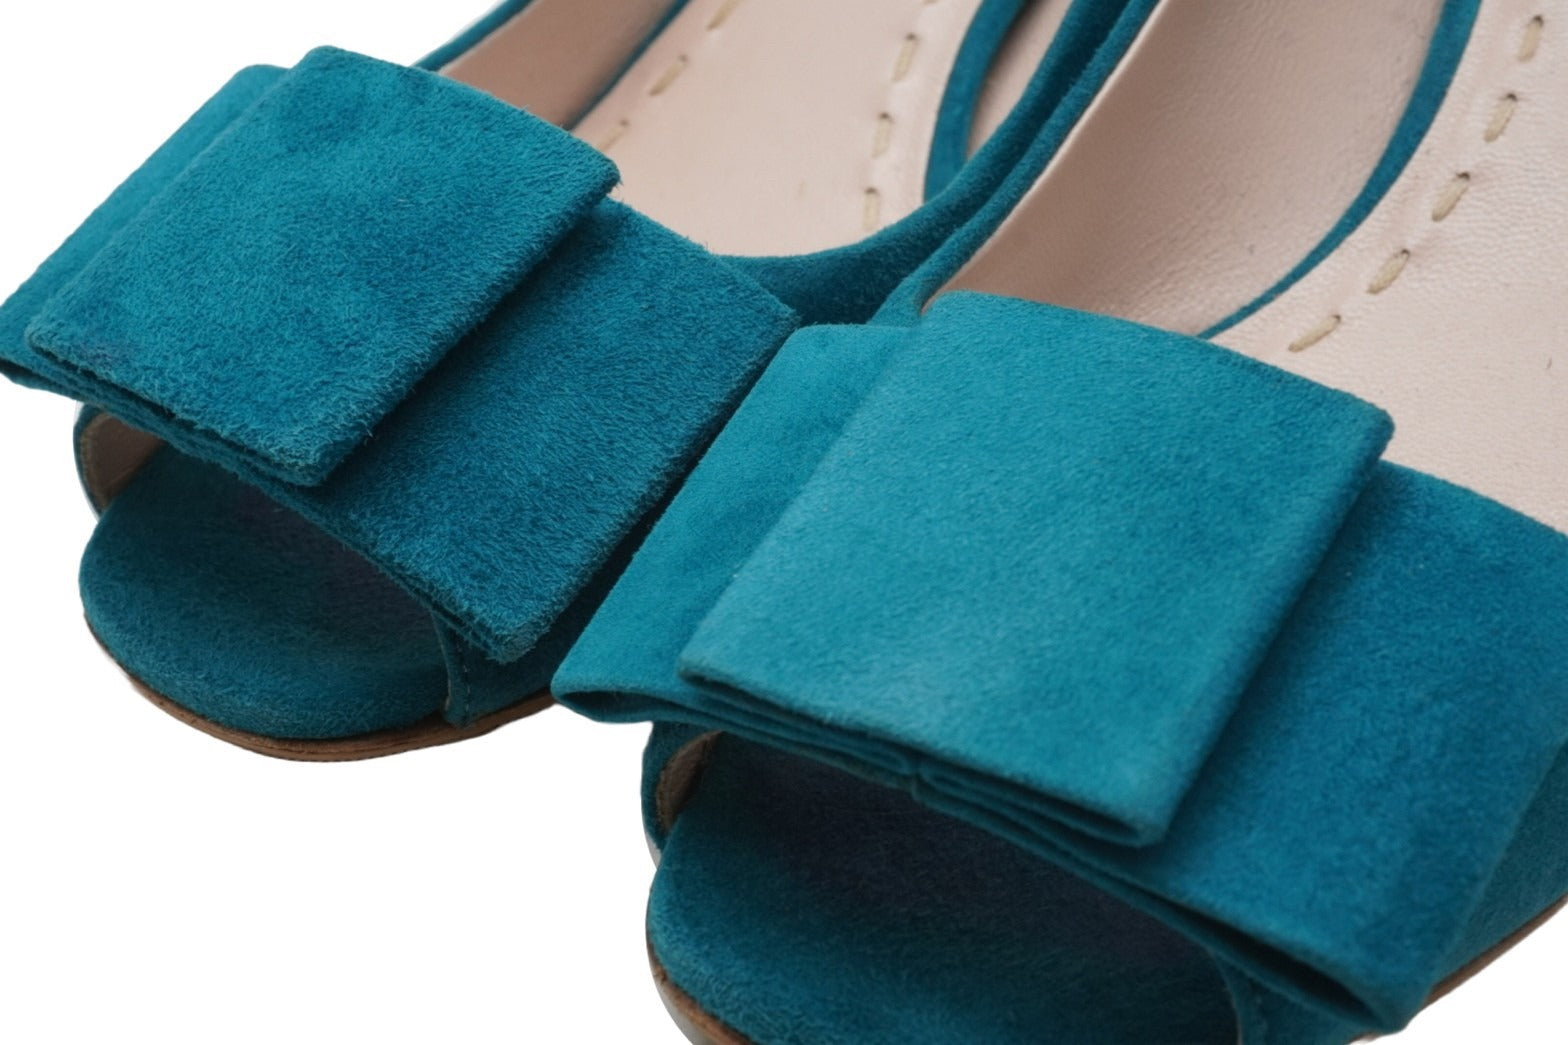 MIUMIU ミュウミュウ スエード パンプス ターコイズブルー シューズ 靴 ロゴ デザイン サイズ35 美品 中古 51241 –  Casanova Vintage